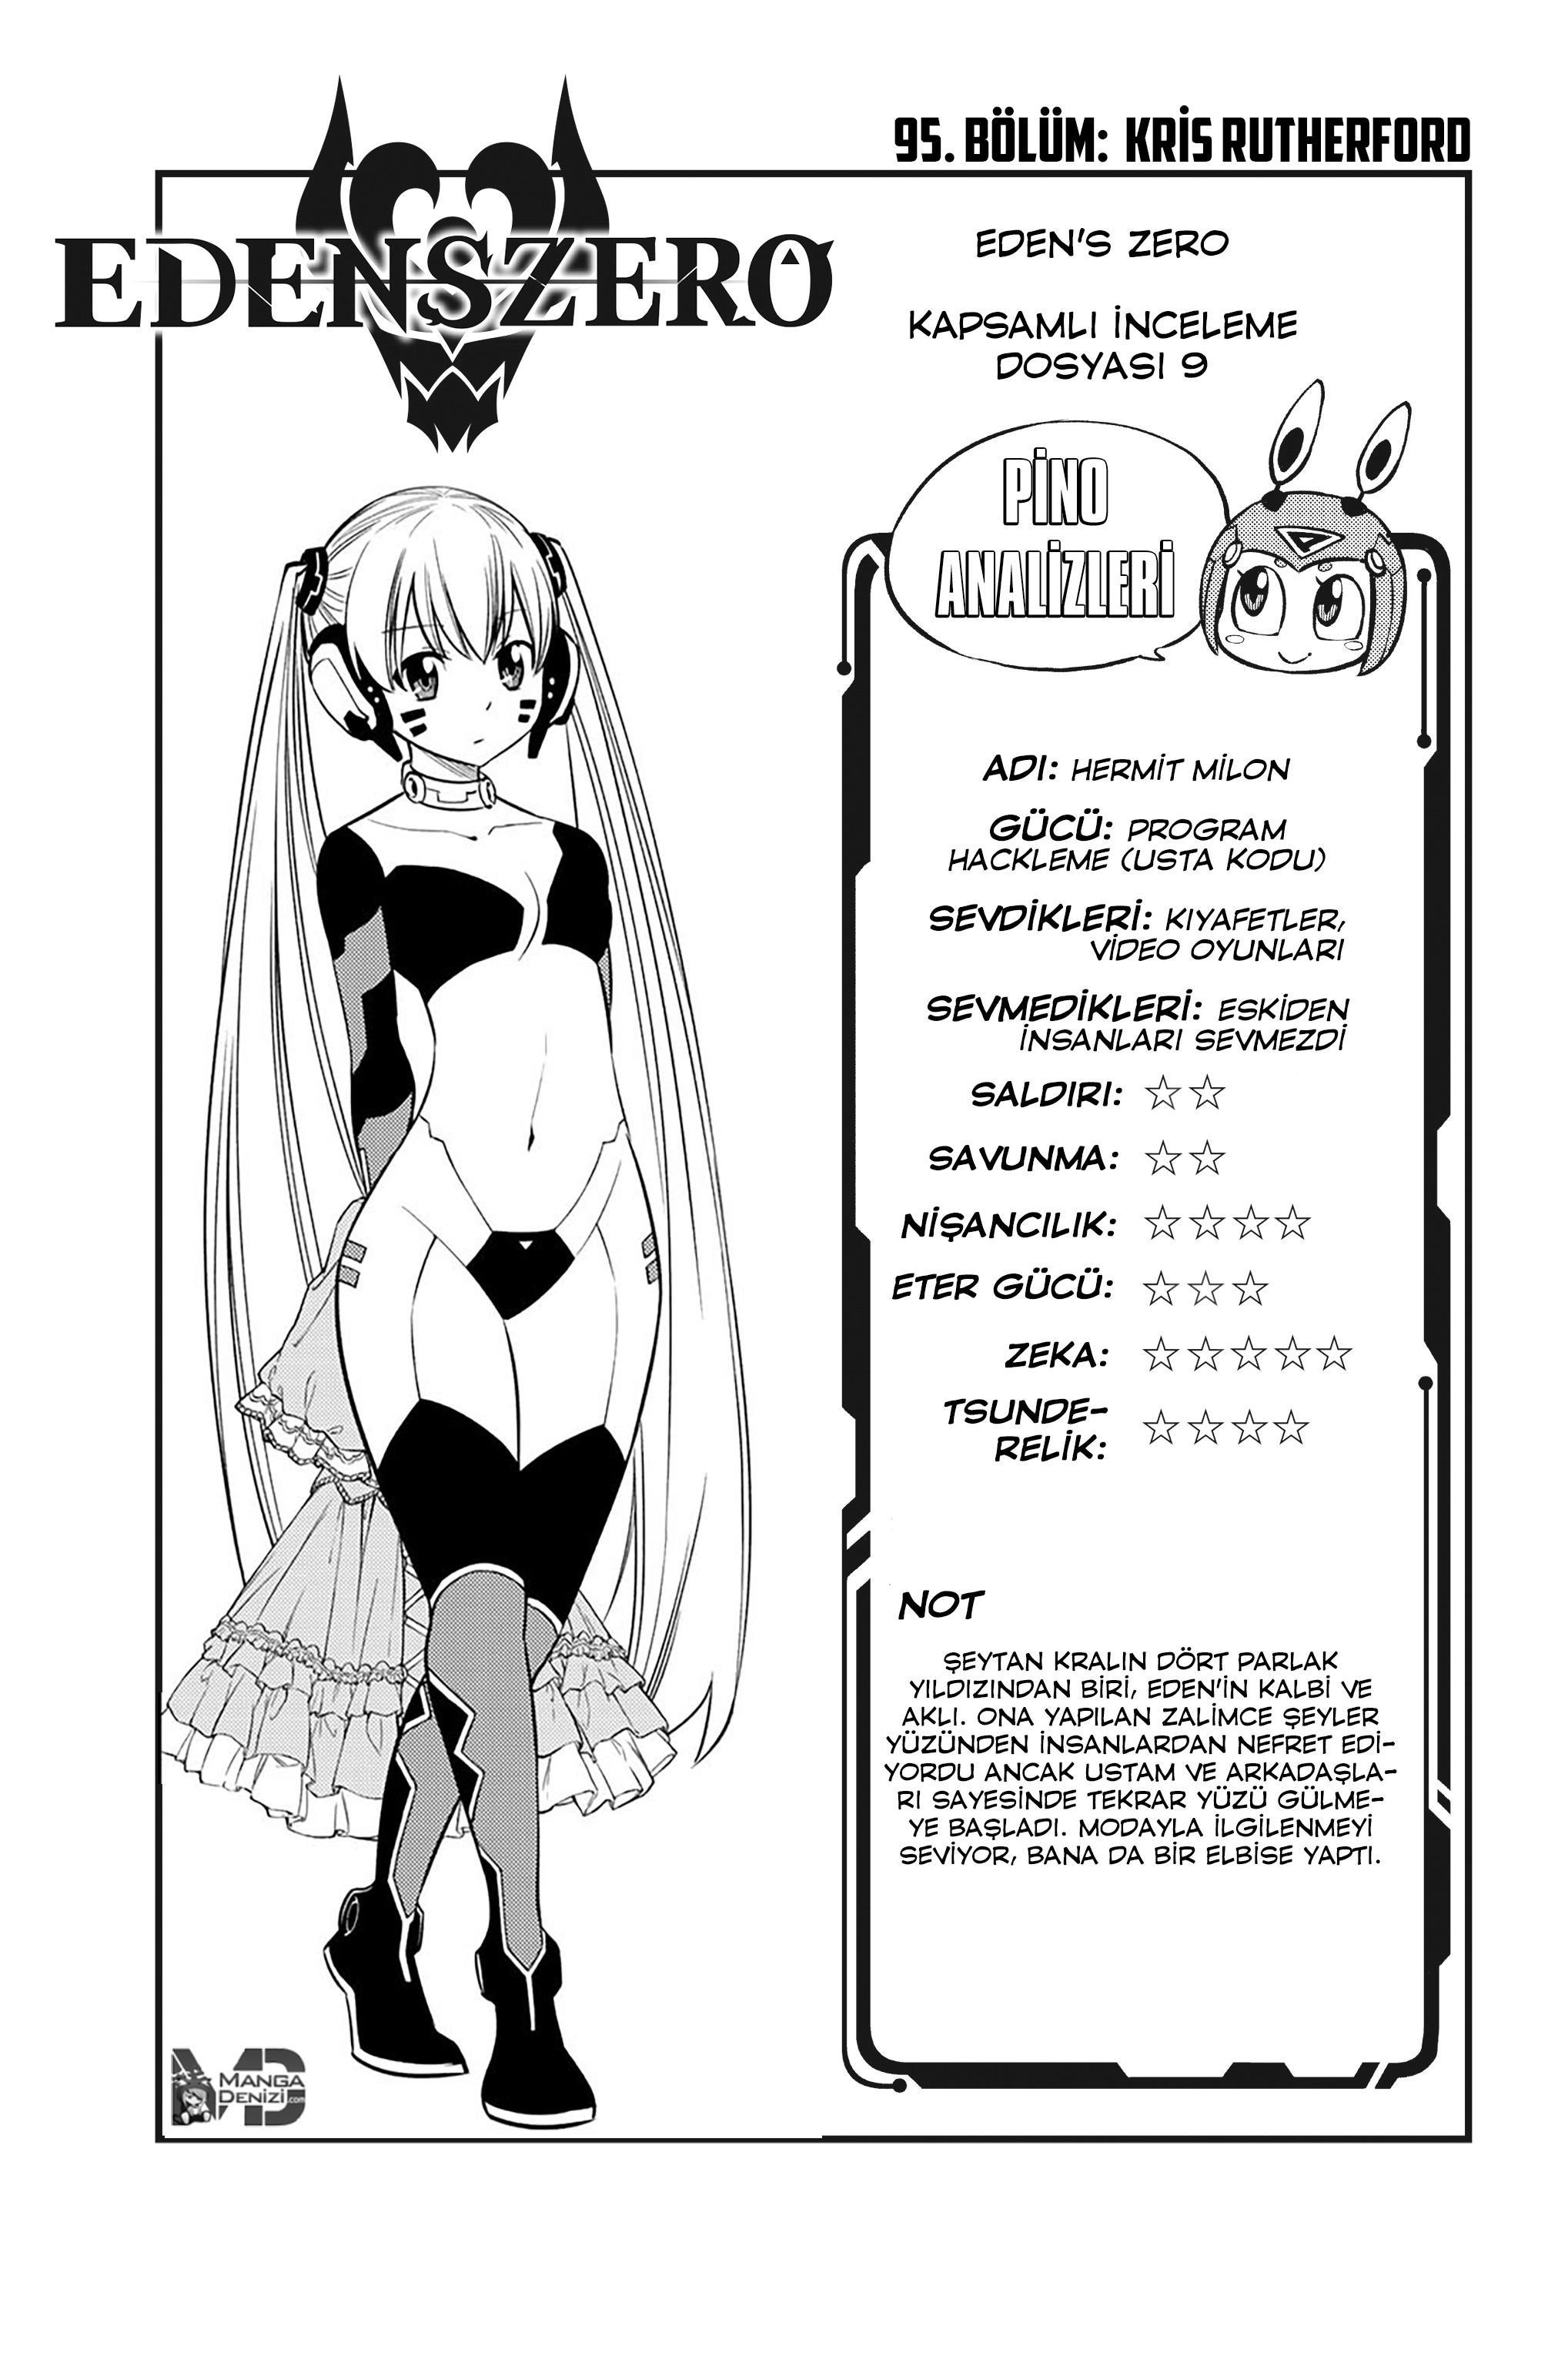 Eden's Zero mangasının 095 bölümünün 2. sayfasını okuyorsunuz.